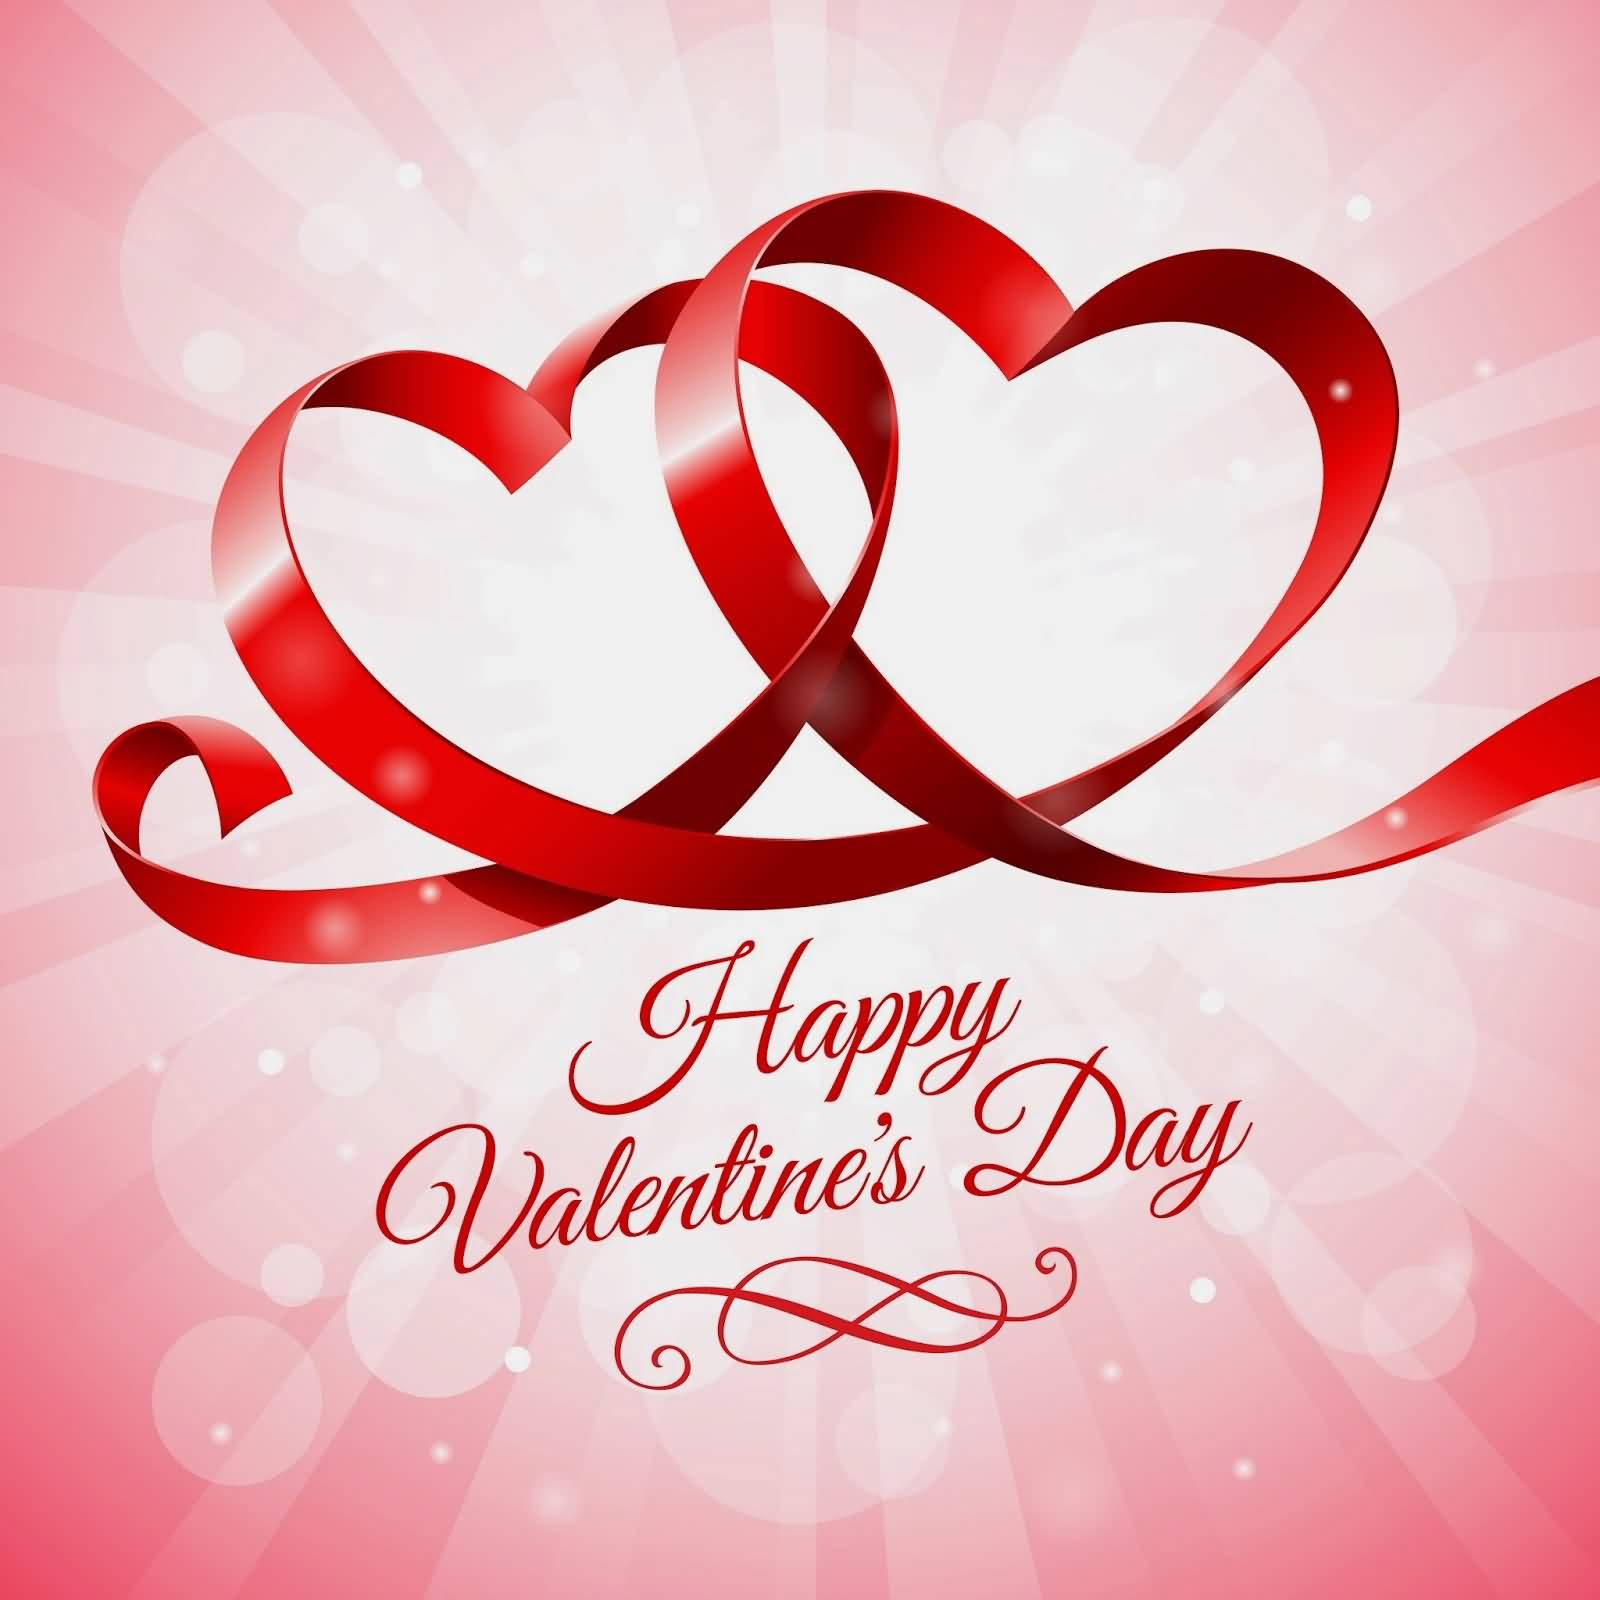 Happy Valentine’s Day Ribbon Hearts